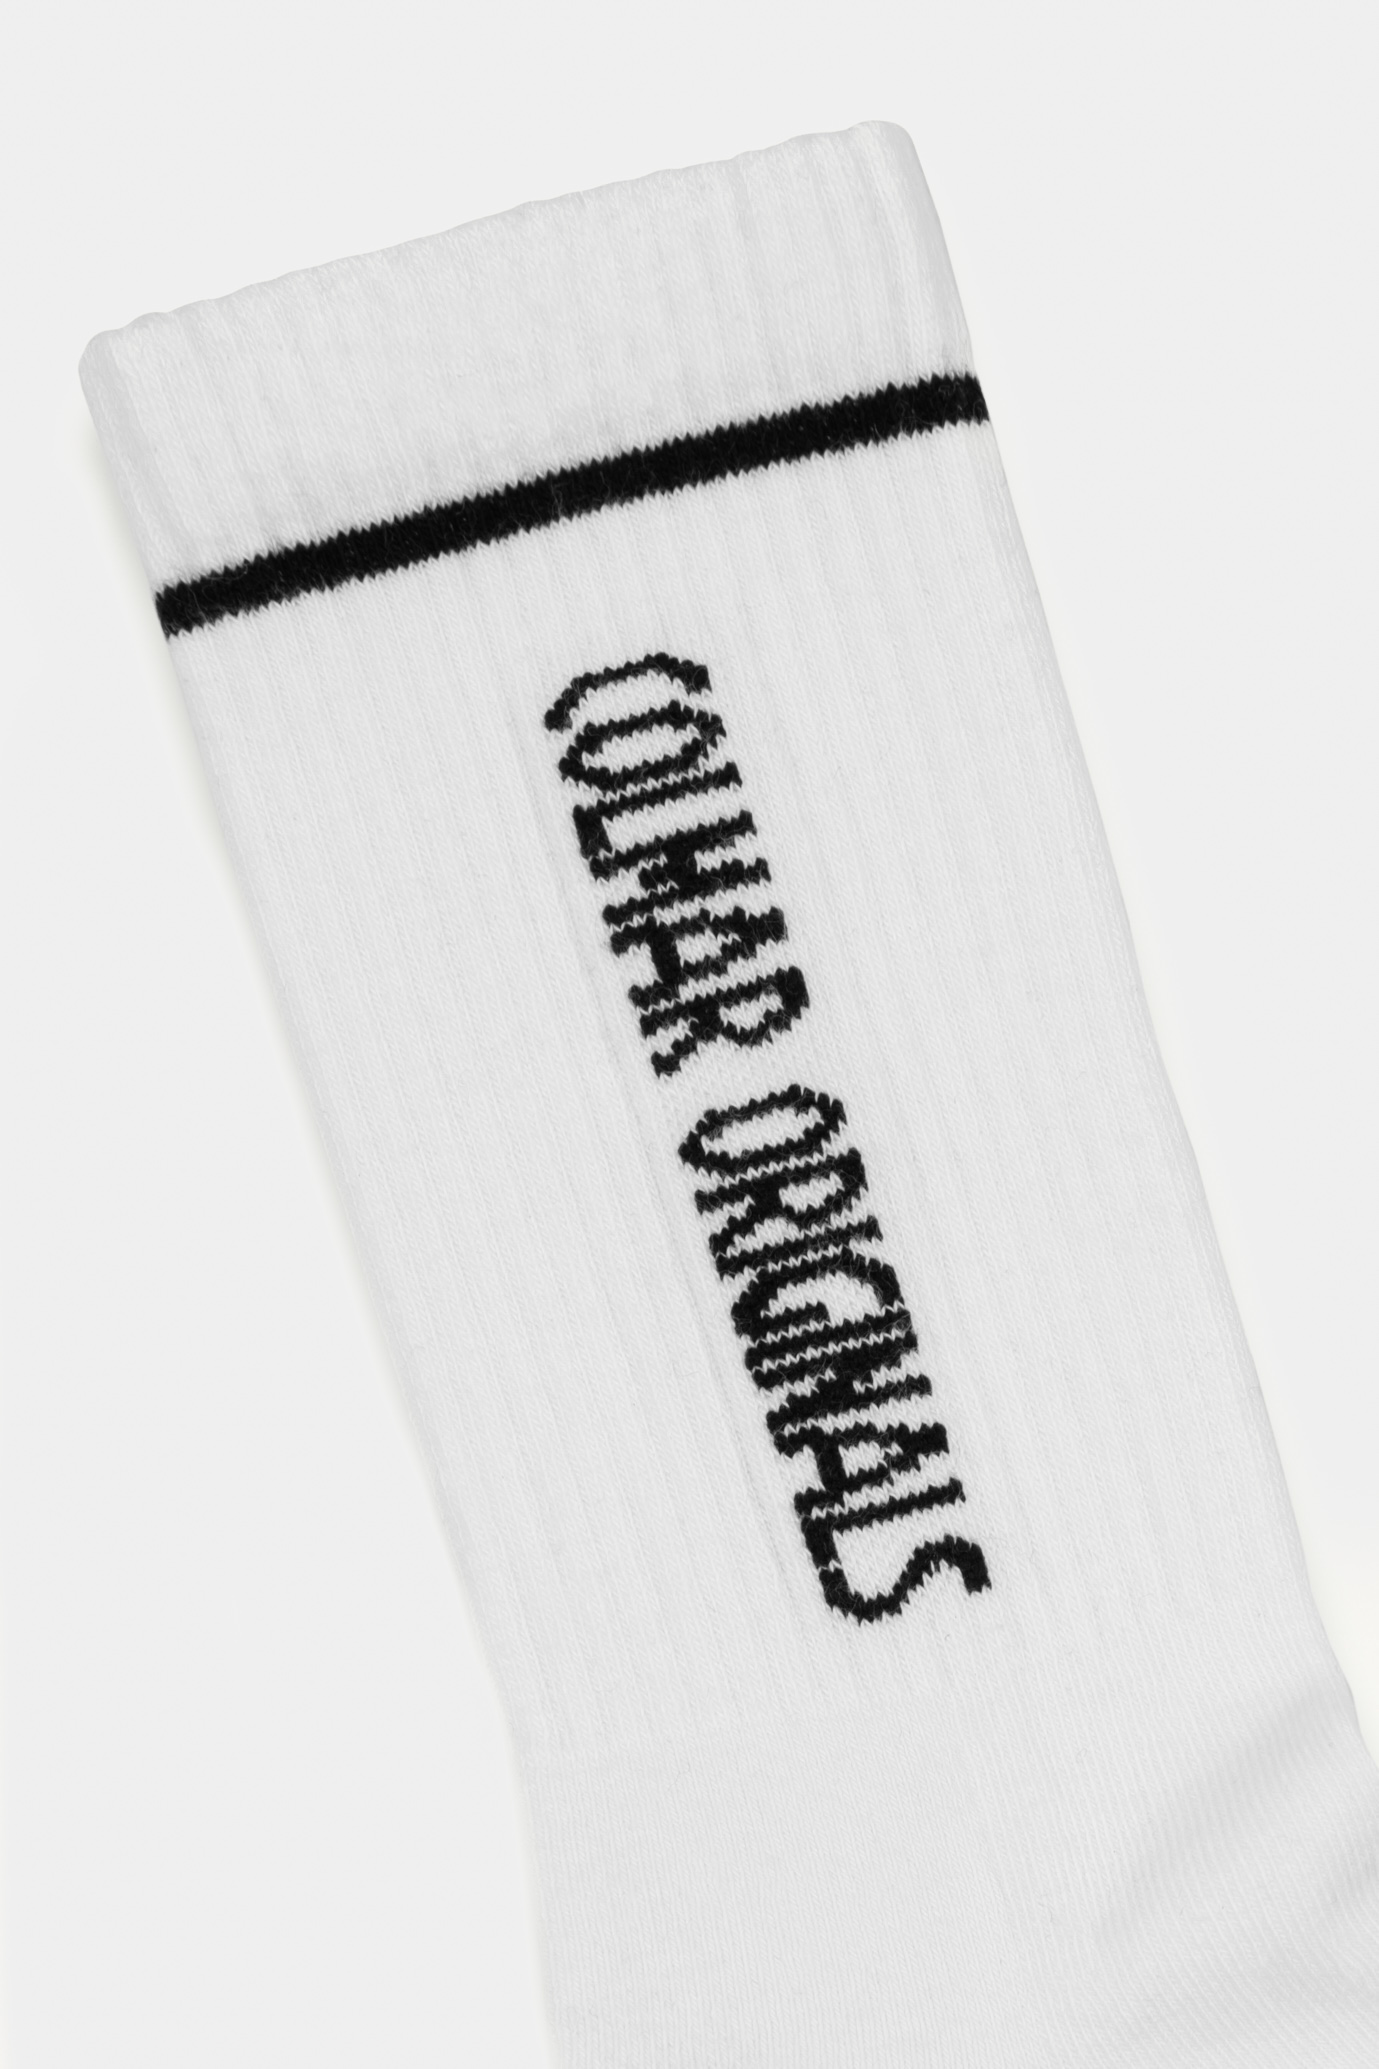 Білі шкарпетки Colmar 